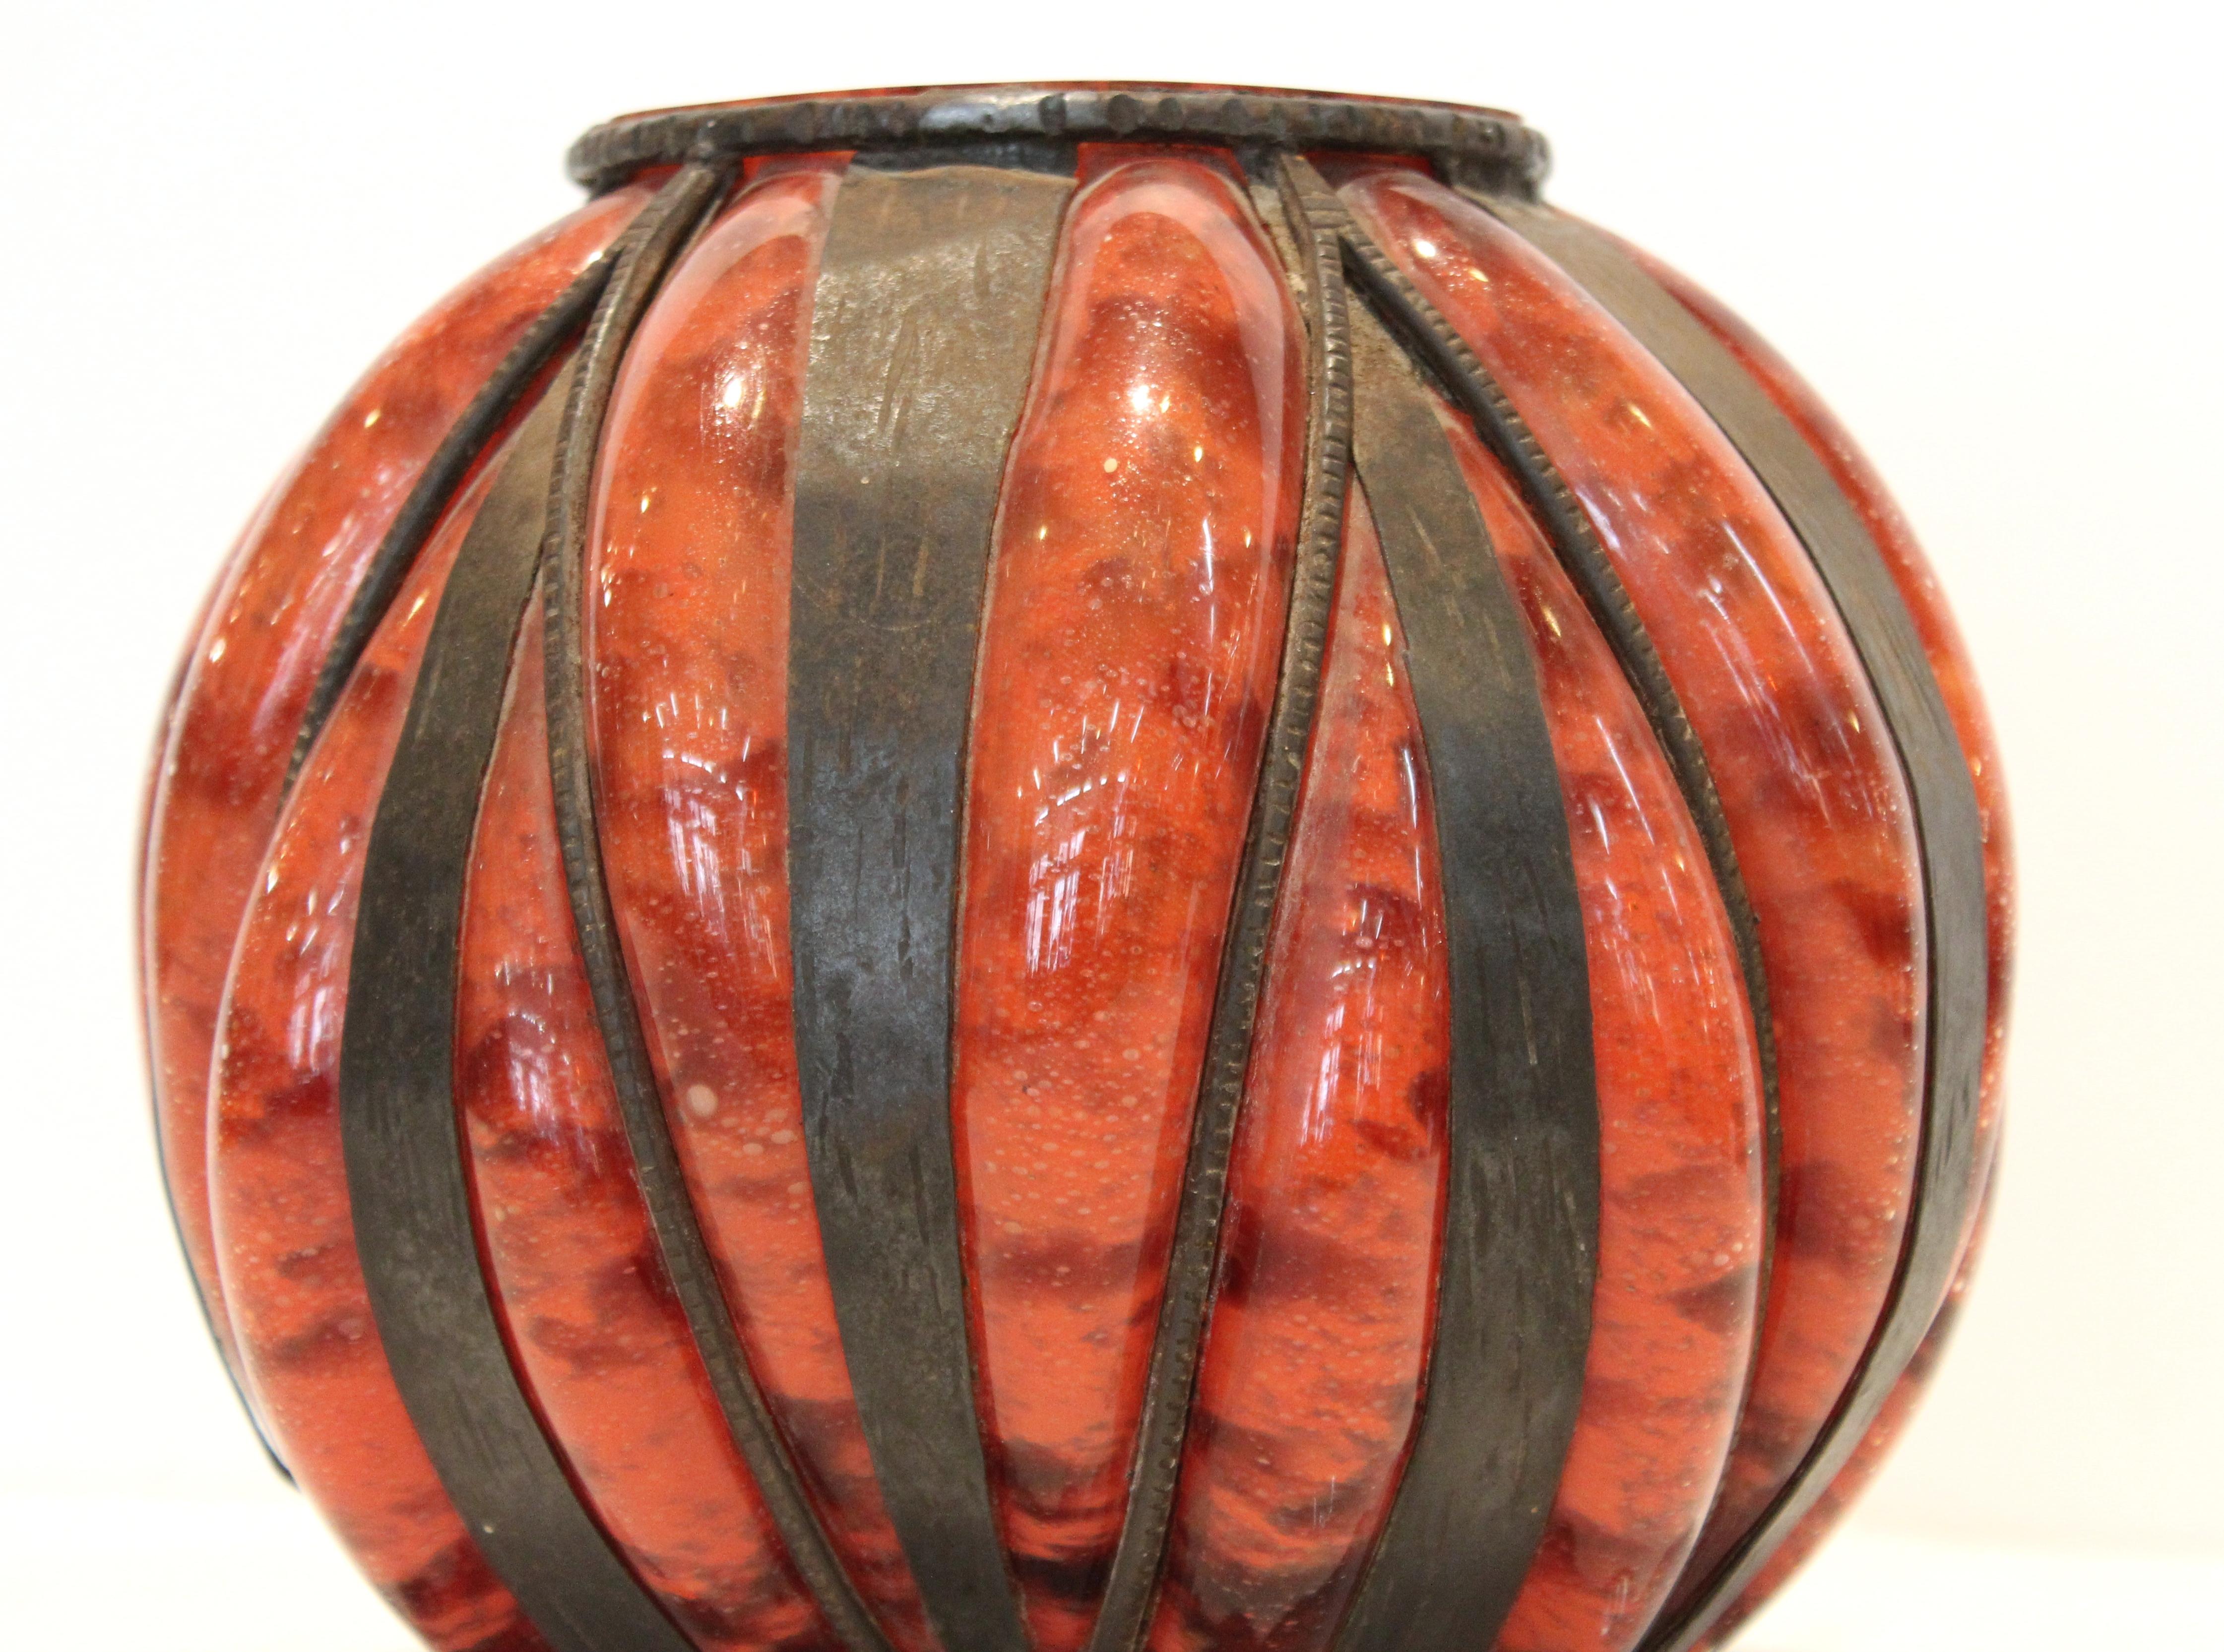 Vase en verre Art déco français attribué à Degué et probablement réalisé au milieu des années 1920. La pièce est faite de verre soufflé dans une structure en fer forgé à la main. Incisé sur le fond 